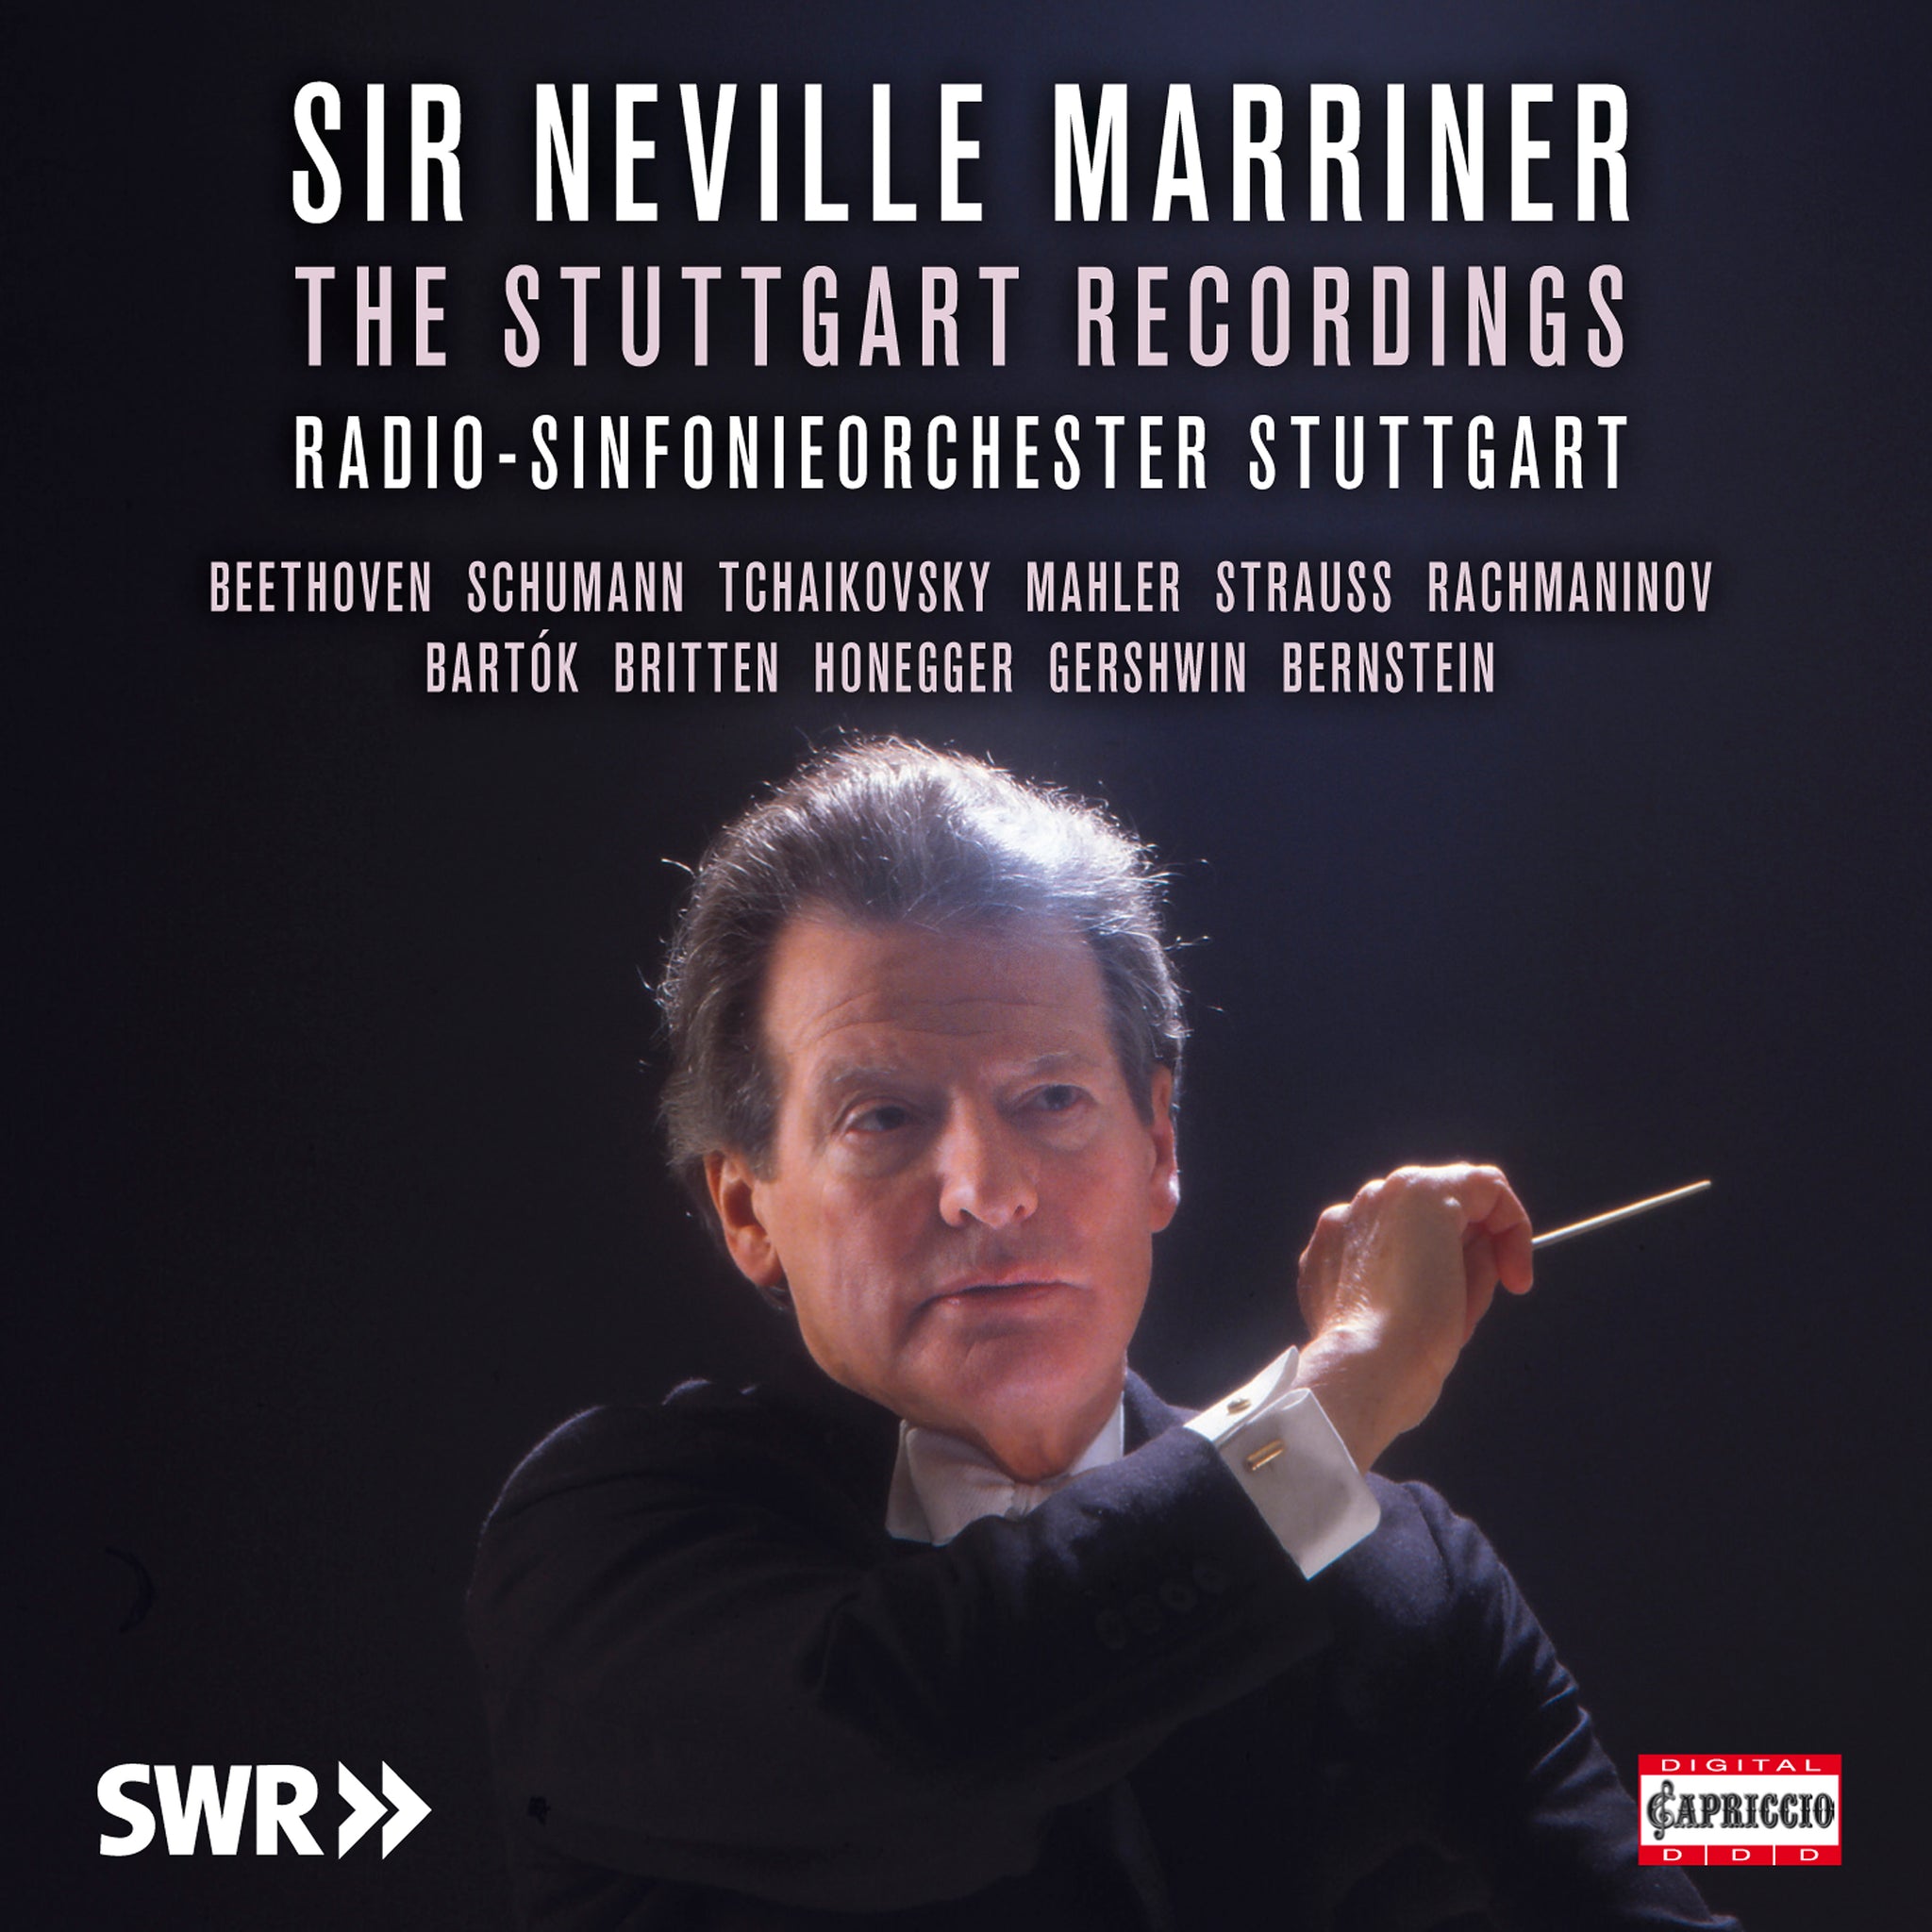 The Stuttgart Recordings / Sir Neville Marriner